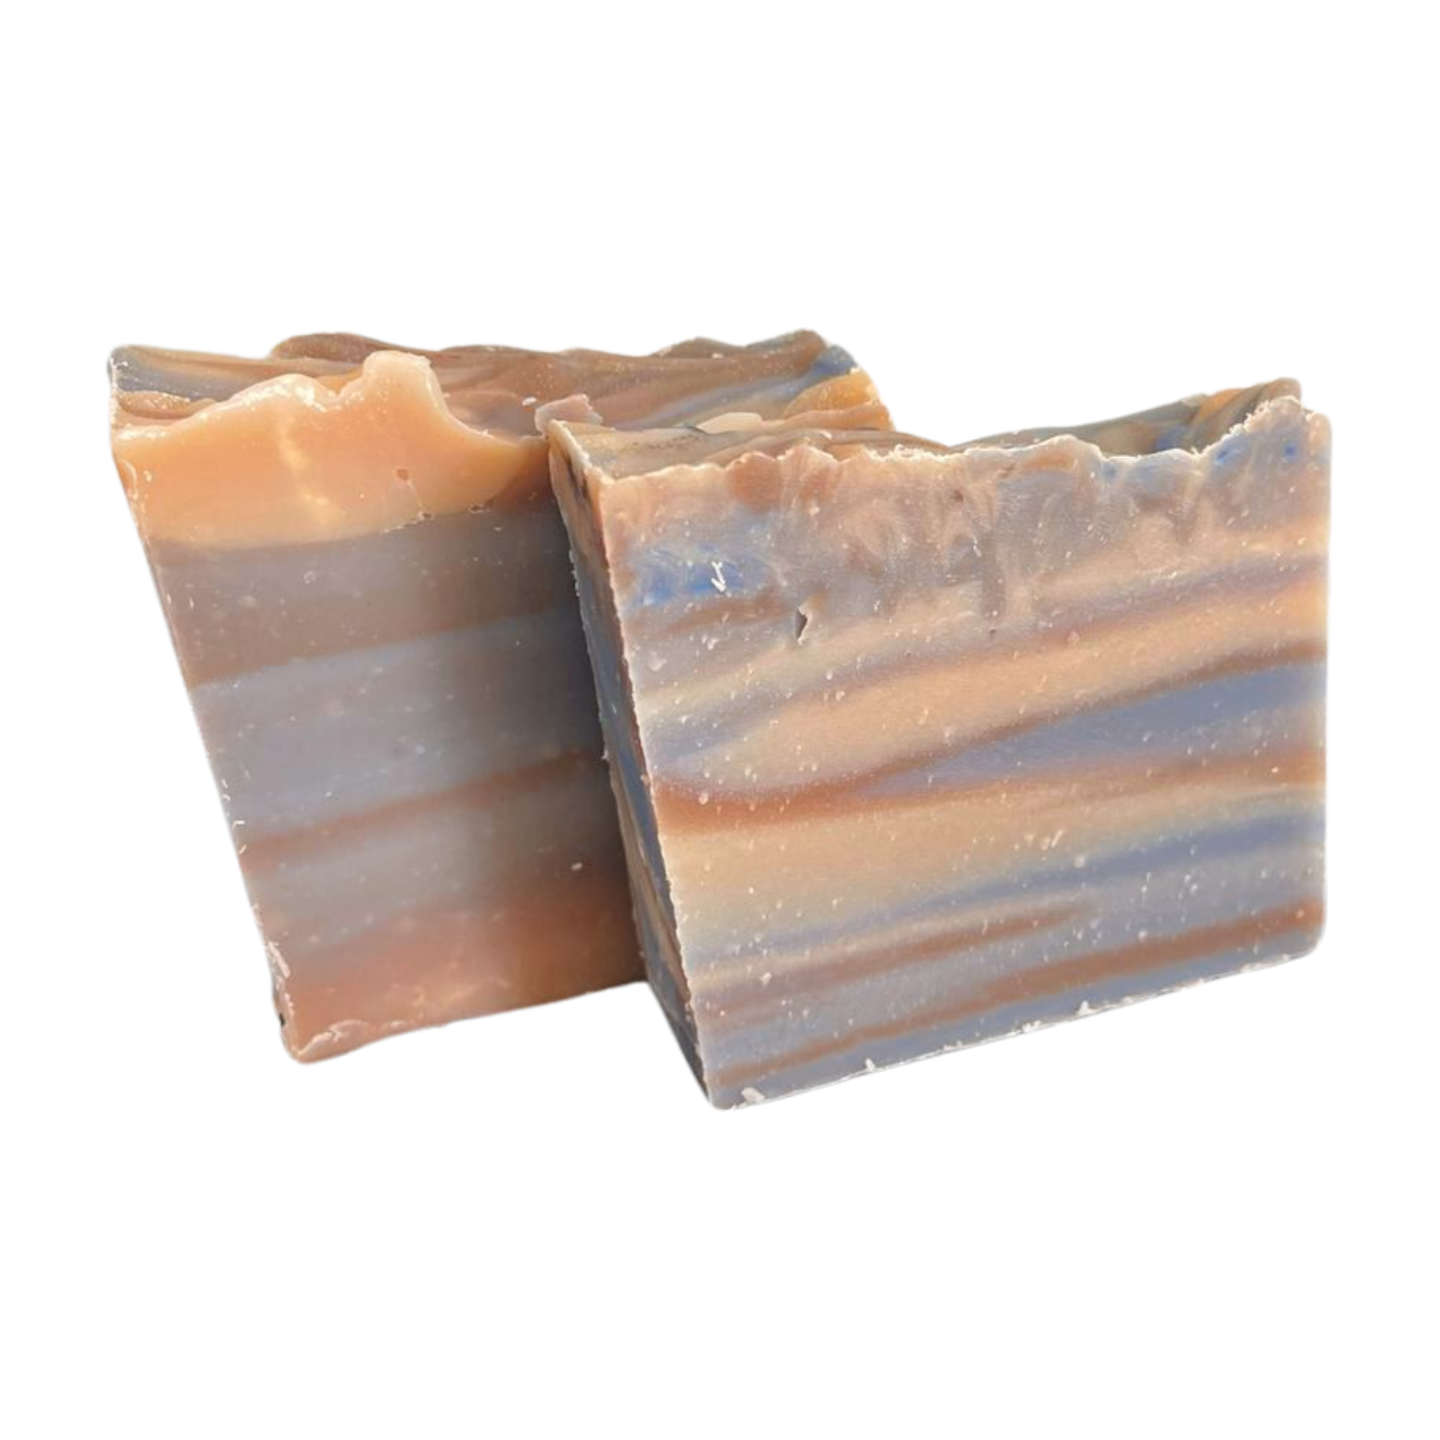 Frankincense Soap